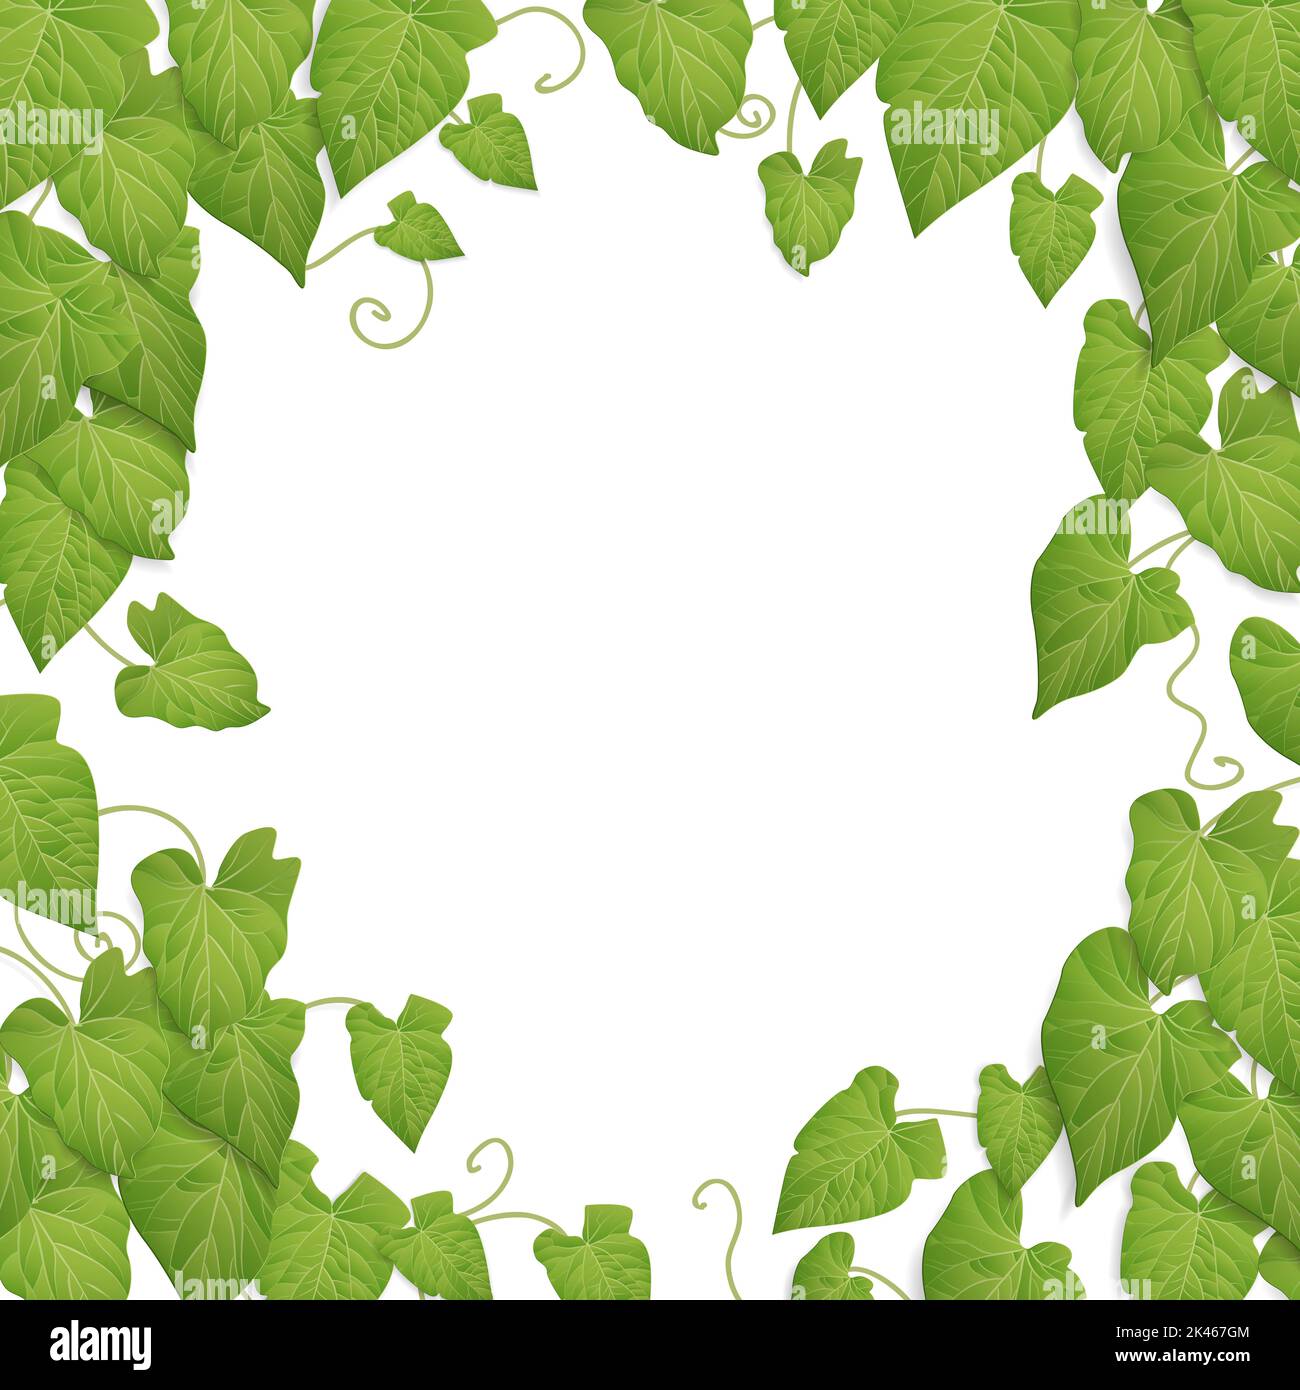 fond de feuilles vertes - thème de conception de vigne nature Banque D'Images